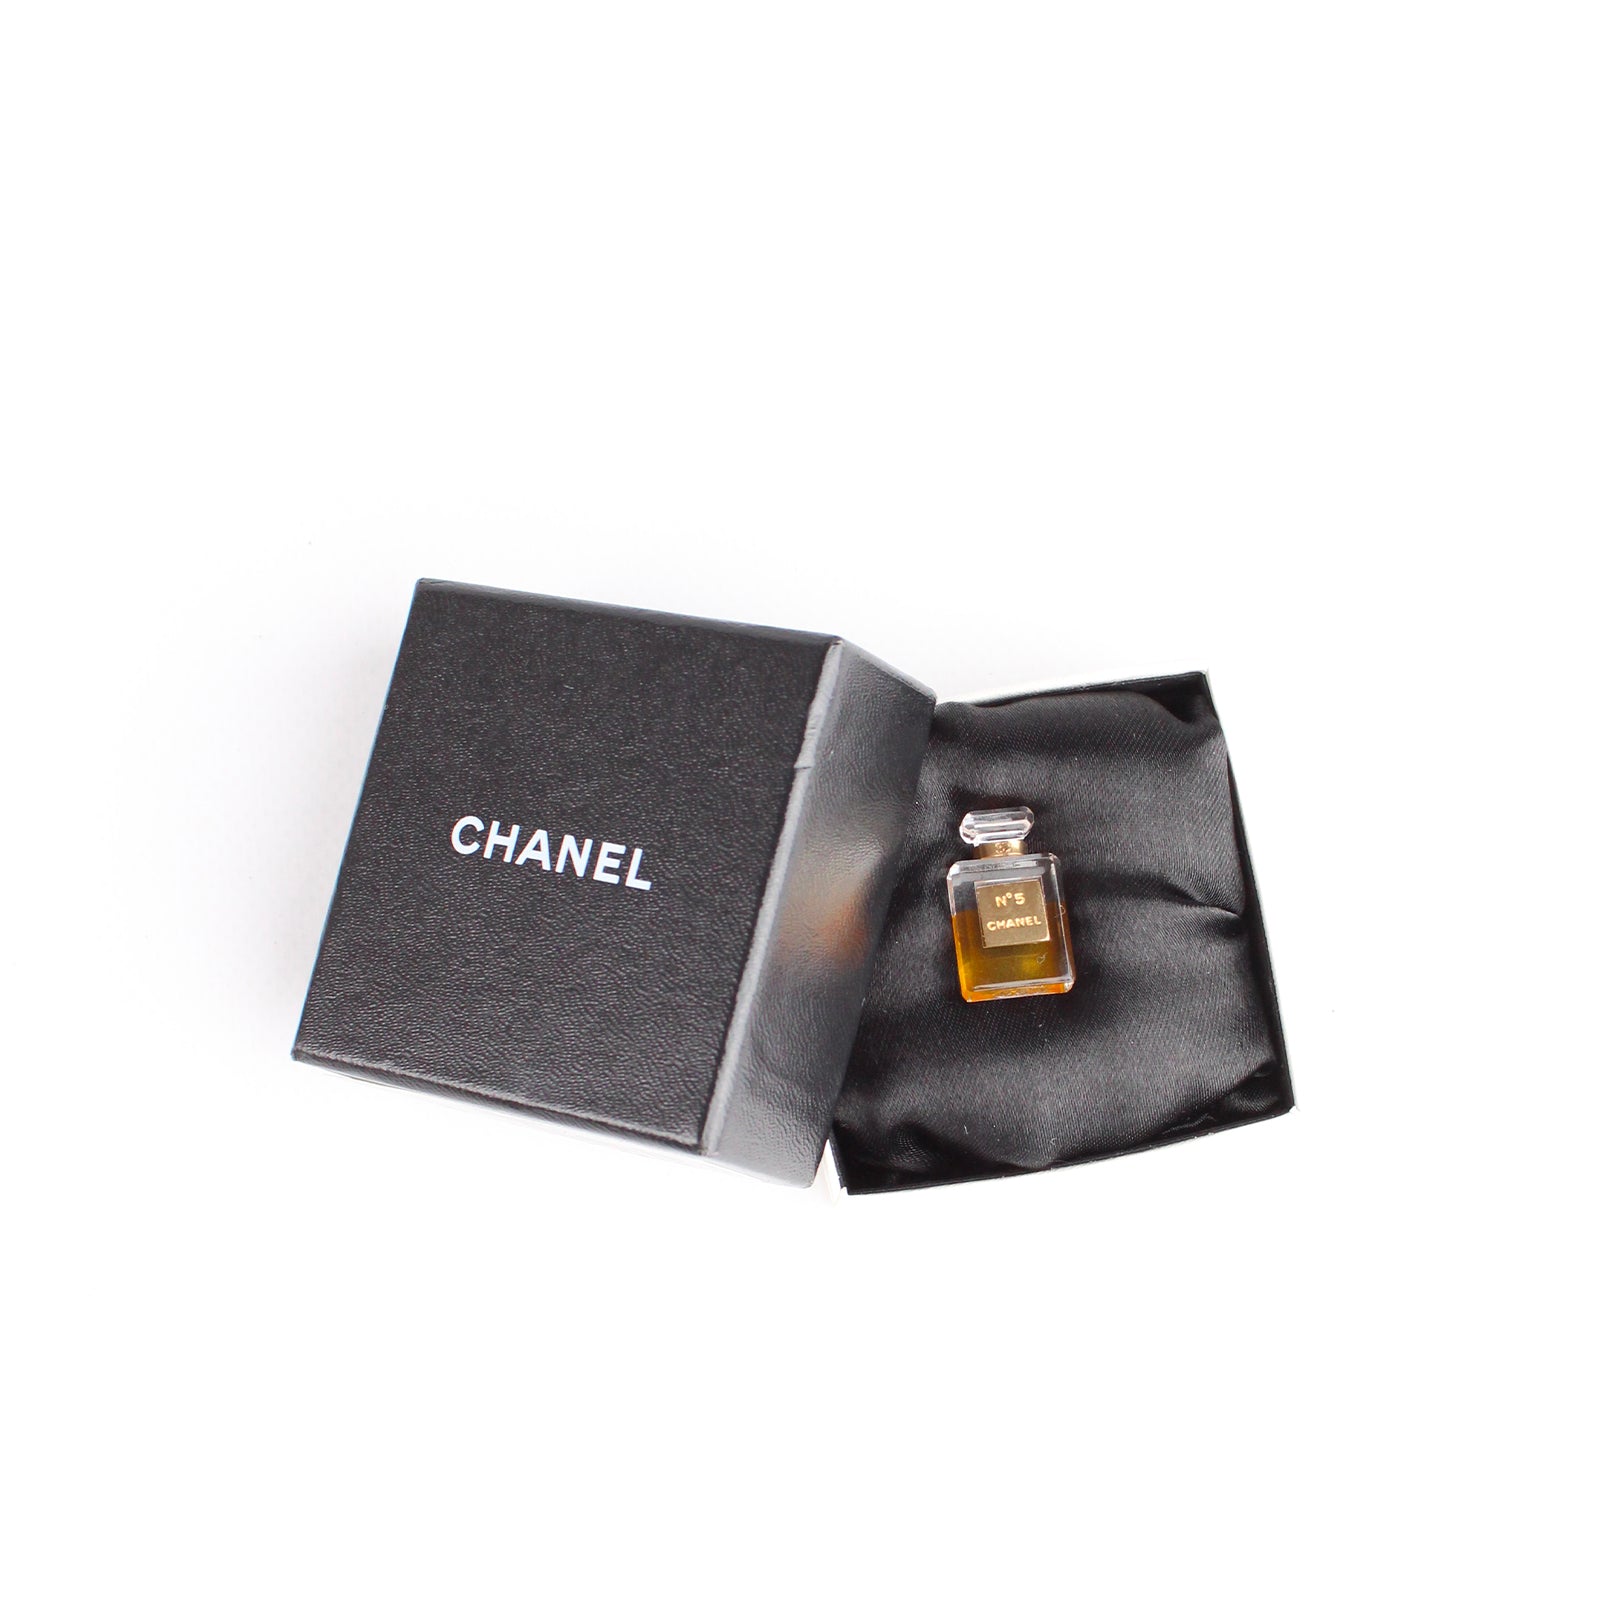 CHANEL - Broche Flacon du parfum Chanel N°5